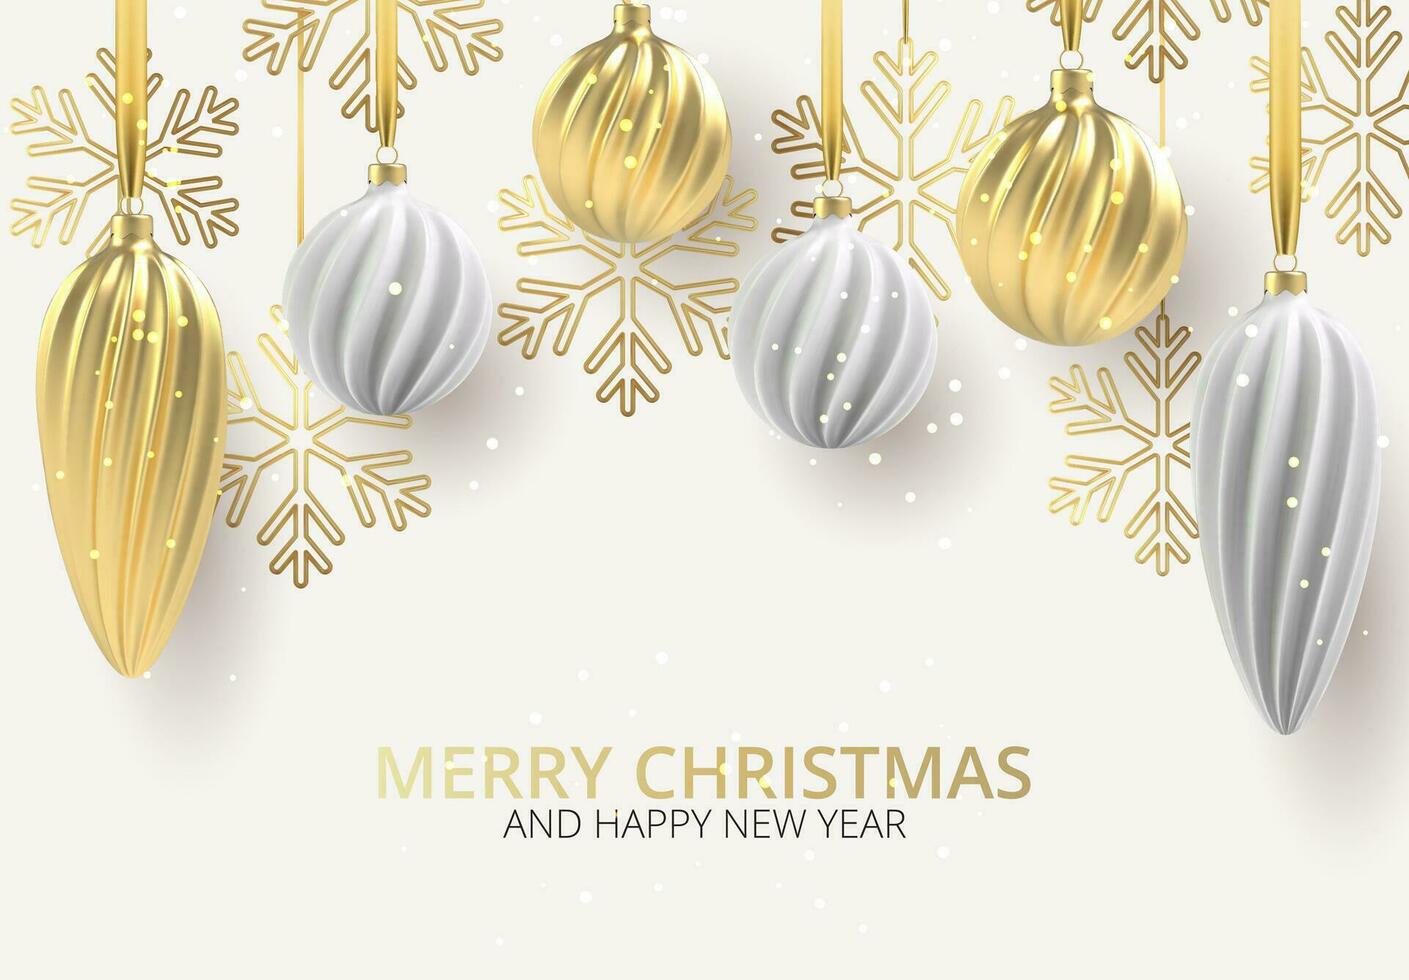 Navidad antecedentes con Navidad árbol juguetes de blanco y oro, un espiral pelotas y copos de nieve en blanco horizontal fondo, con el inscripción Navidad. vector ilustración.